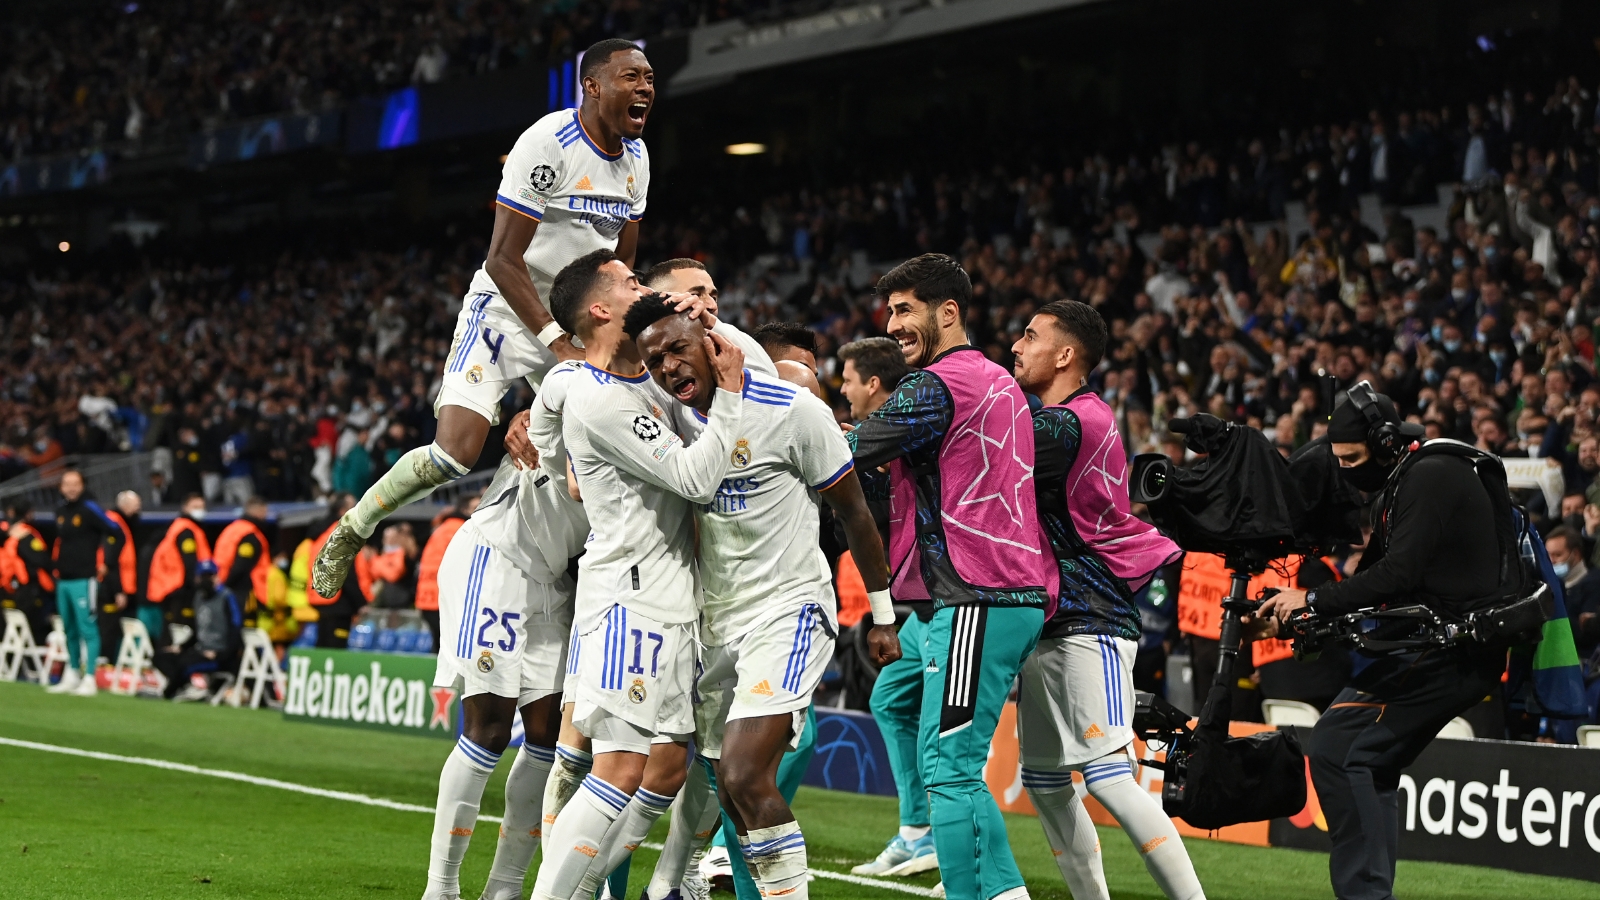 Cúp C1) Real Madrid vào bán kết sau 120 phút nhọc nhằn trước Chelsea |  Goal.com Việt Nam